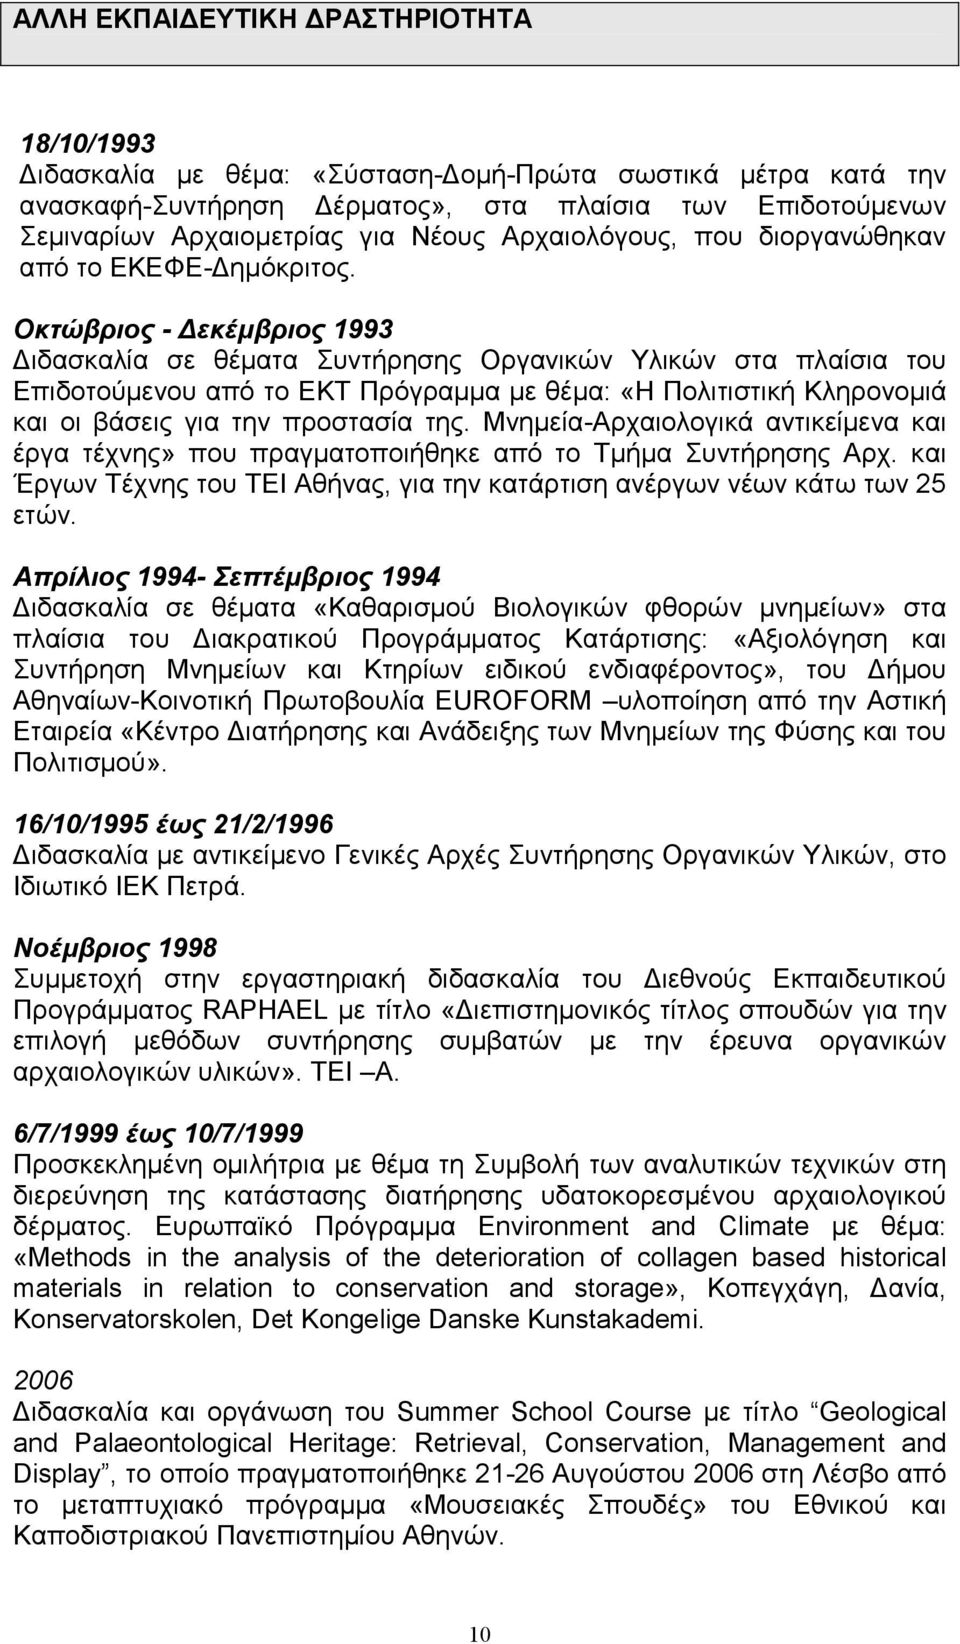 Οκτώβριος - Δεκέμβριος 1993 Διδασκαλία σε θέματα Συντήρησης Οργανικών Υλικών στα πλαίσια του Επιδοτούμενου από το ΕΚΤ Πρόγραμμα με θέμα: «Η Πολιτιστική Κληρονομιά και οι βάσεις για την προστασία της.